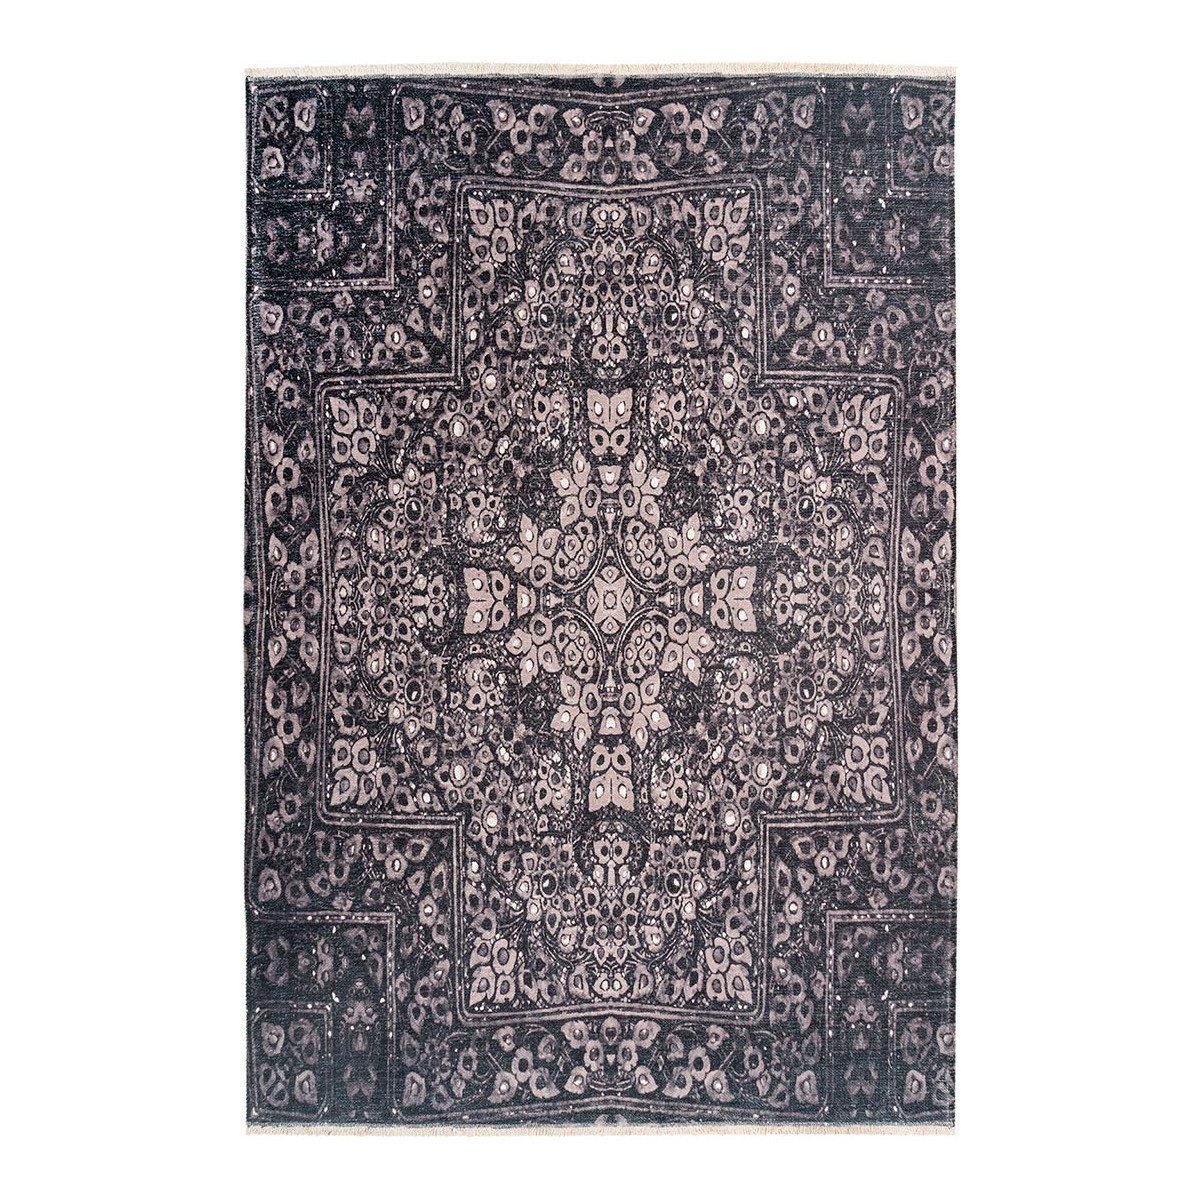 Tapis ethnique en polyester gris 150x230